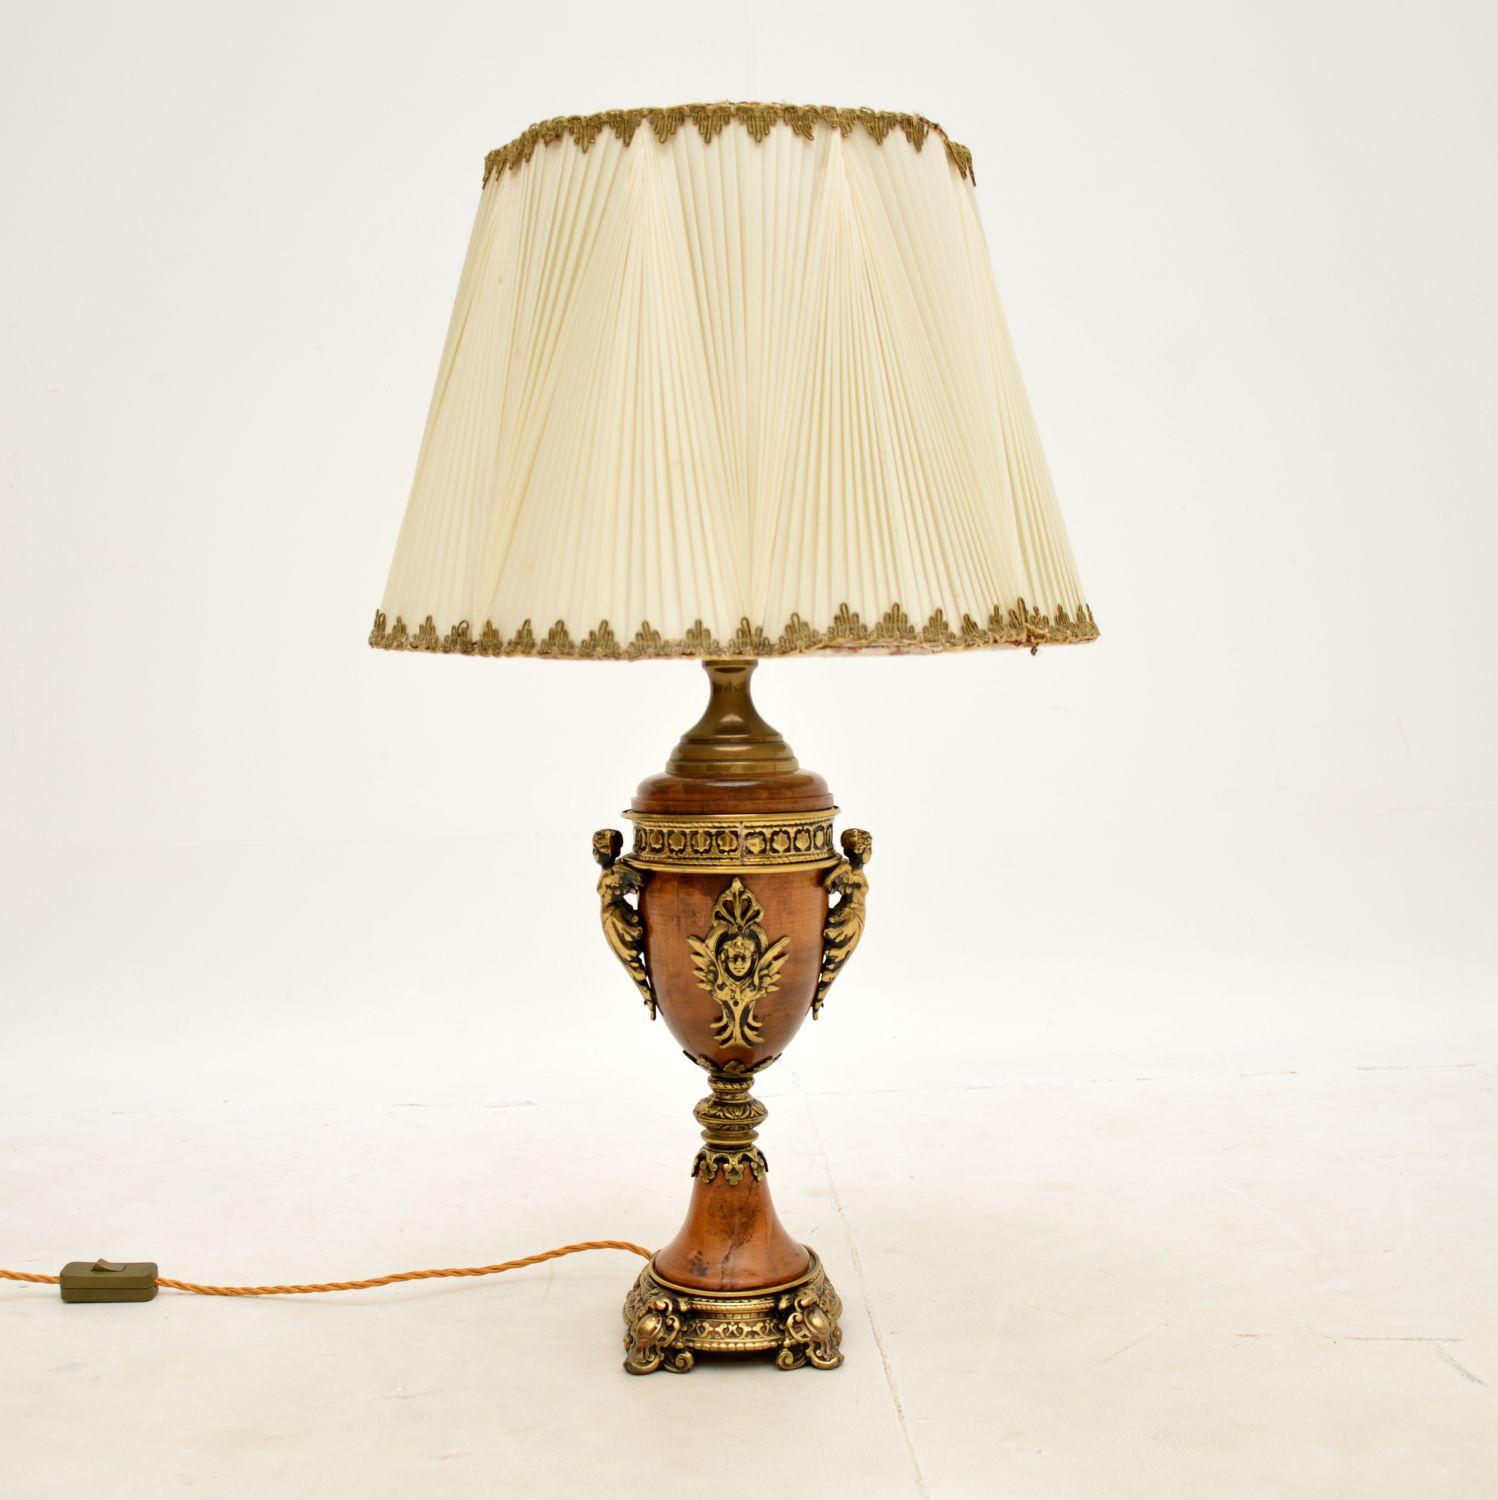 Une belle lampe française vintage bien faite, datant des années 1950 environ.

Il est de très bonne qualité, avec des montures en métal doré ornées, il est de grande taille et impressionnant.

L'état est très bon pour son âge, avec juste une légère